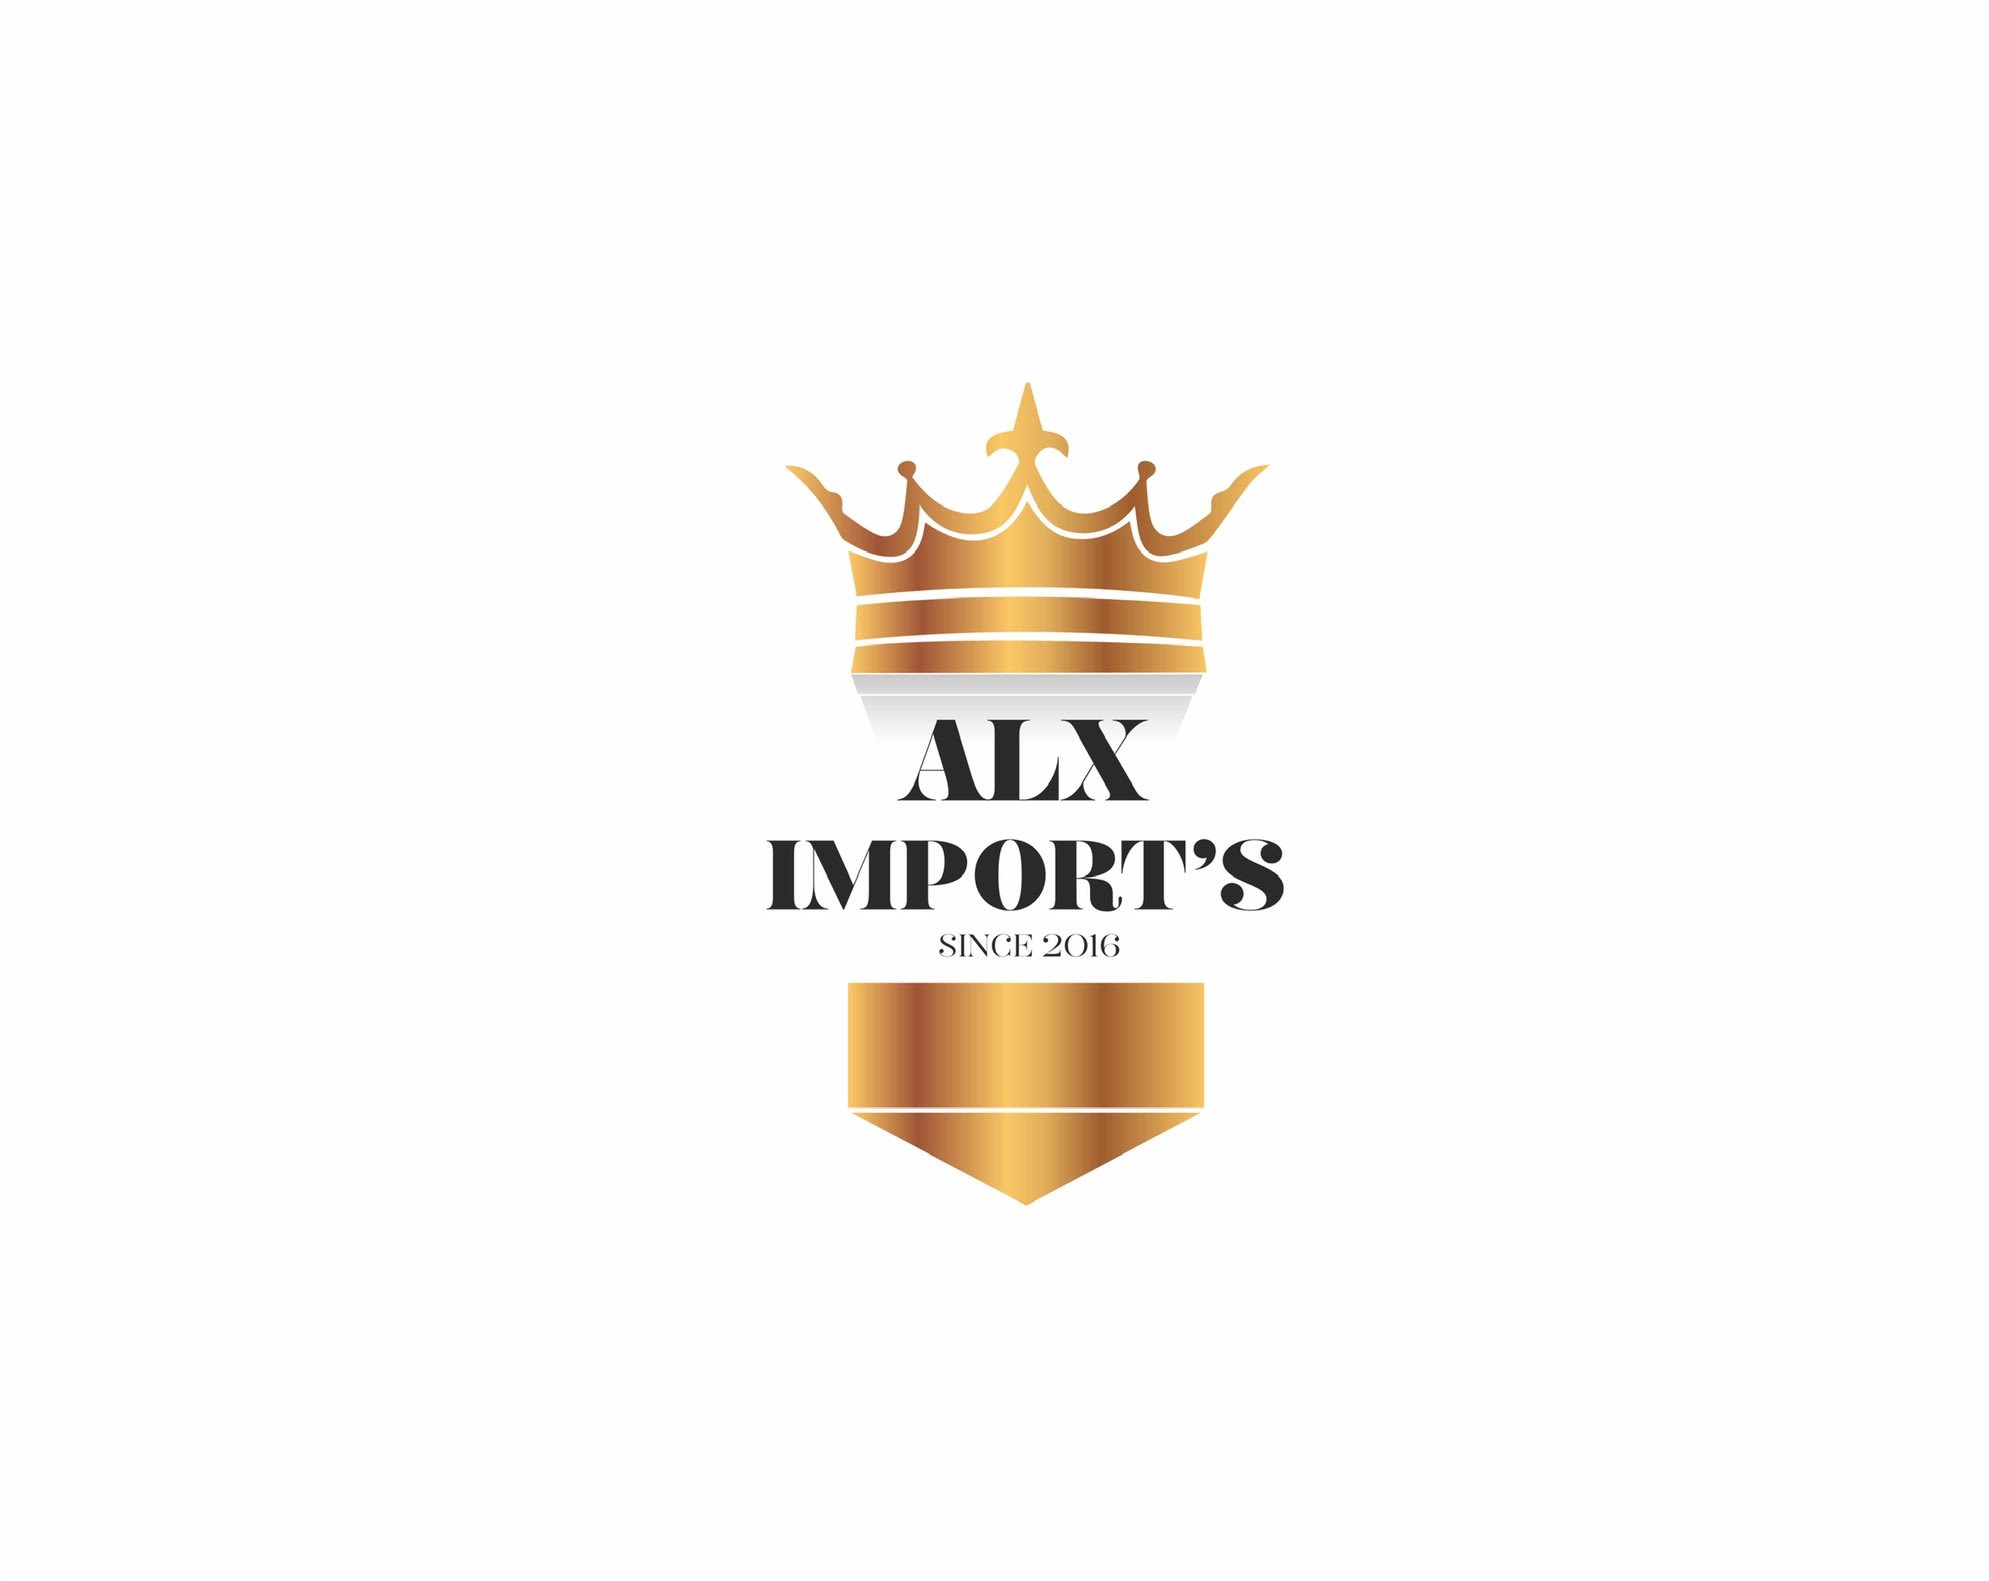 ALX Imports